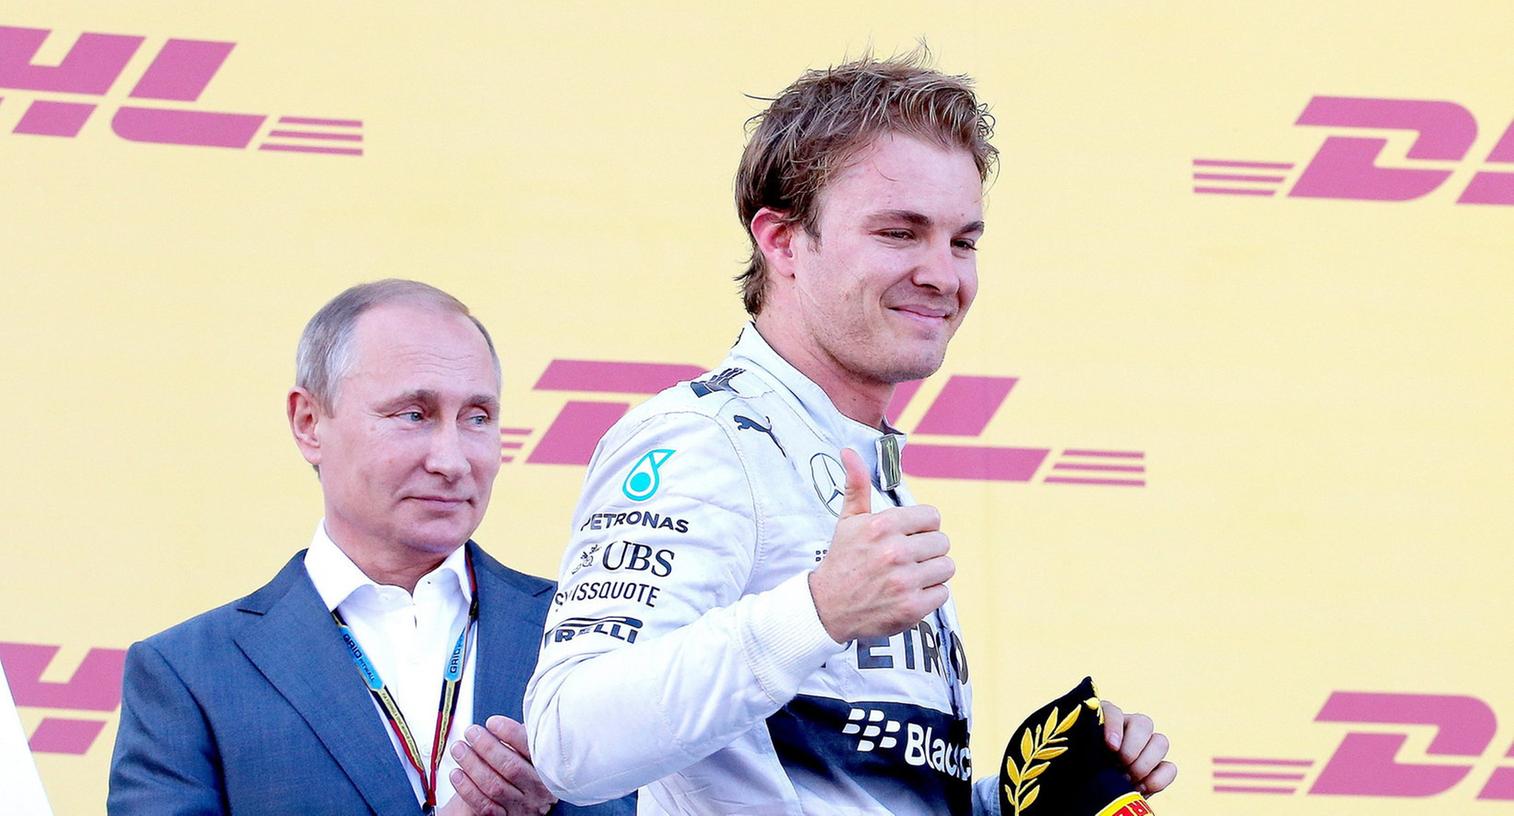 Jagt seinen Teamkollegen: Nico Rosberg will Lewis Hamilton in der Fahrerwertung noch überflügeln.